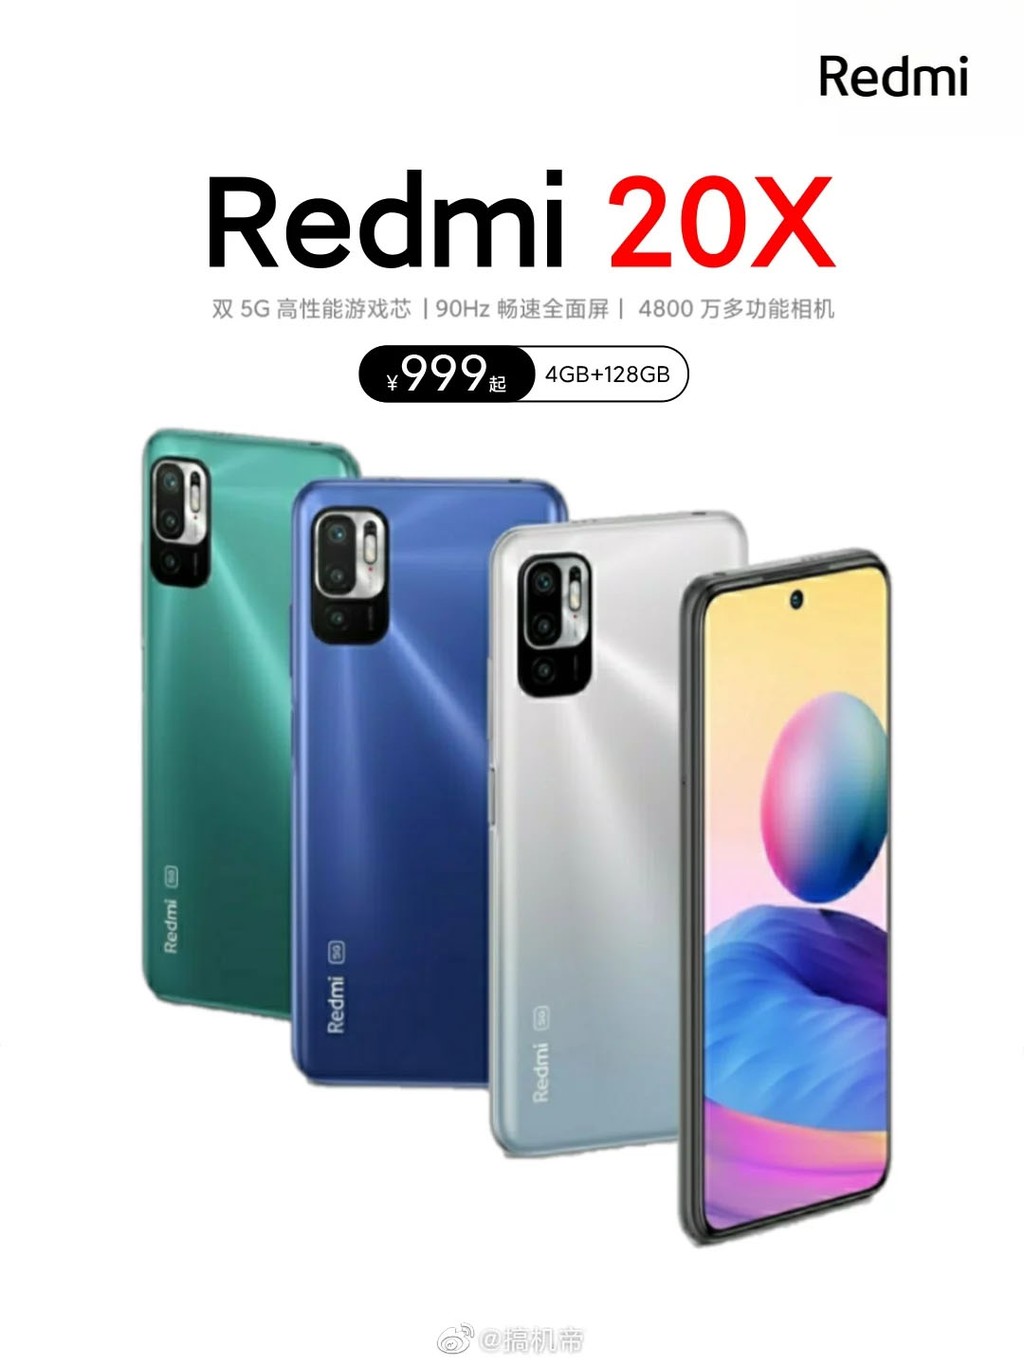 Lộ giá bán, thiết kế, thông số kỹ thuật chính của Redmi 20X ảnh 1